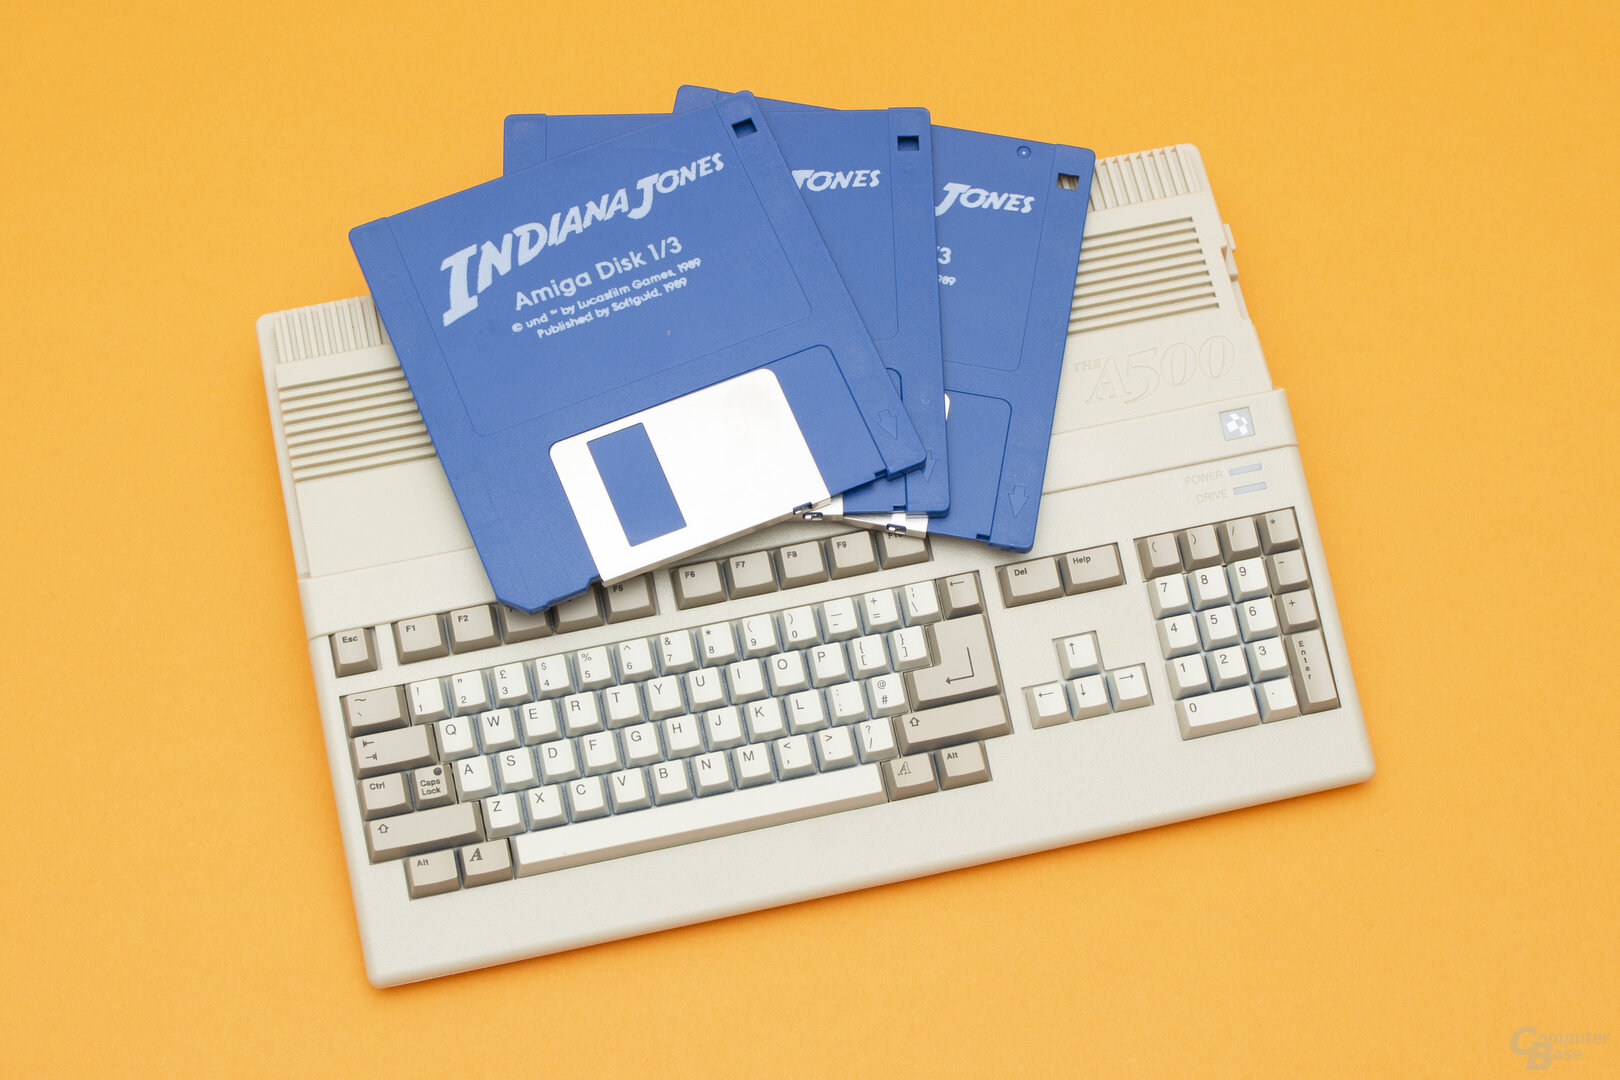 TheA500 Mini im Vergleich zu seinerzeit genutzten 3,5''-Disketten